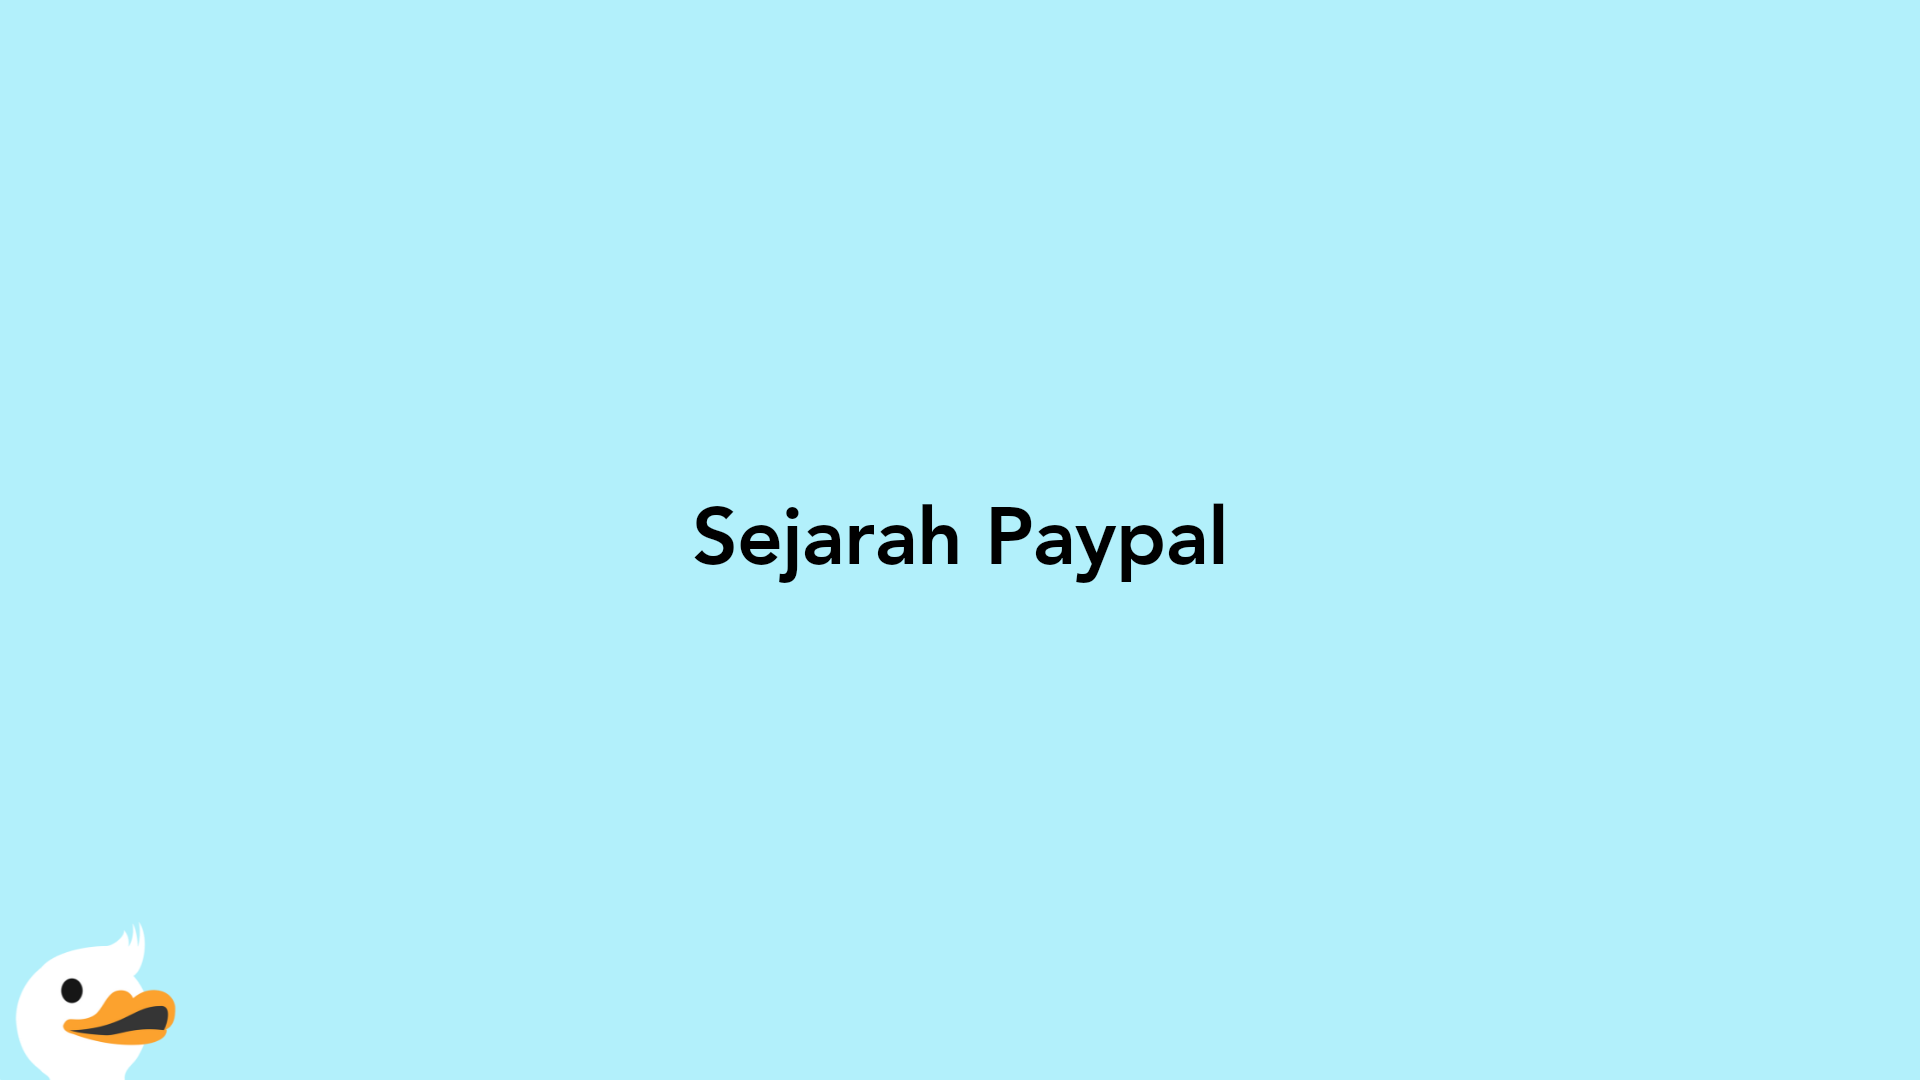 Sejarah Paypal